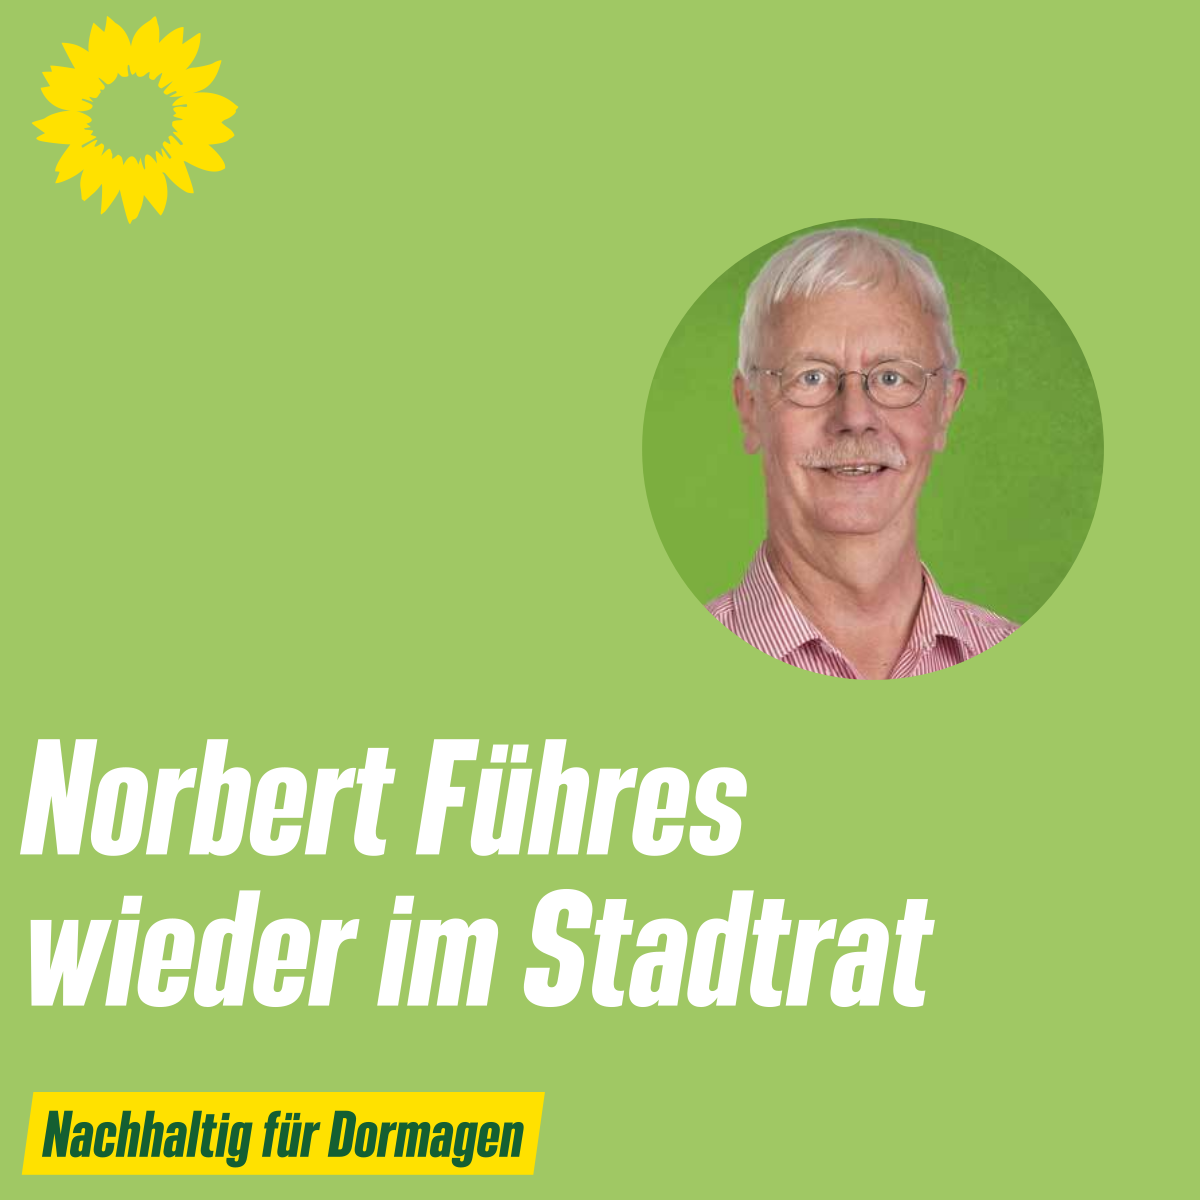 Norbert Führes wieder im Stadtrat